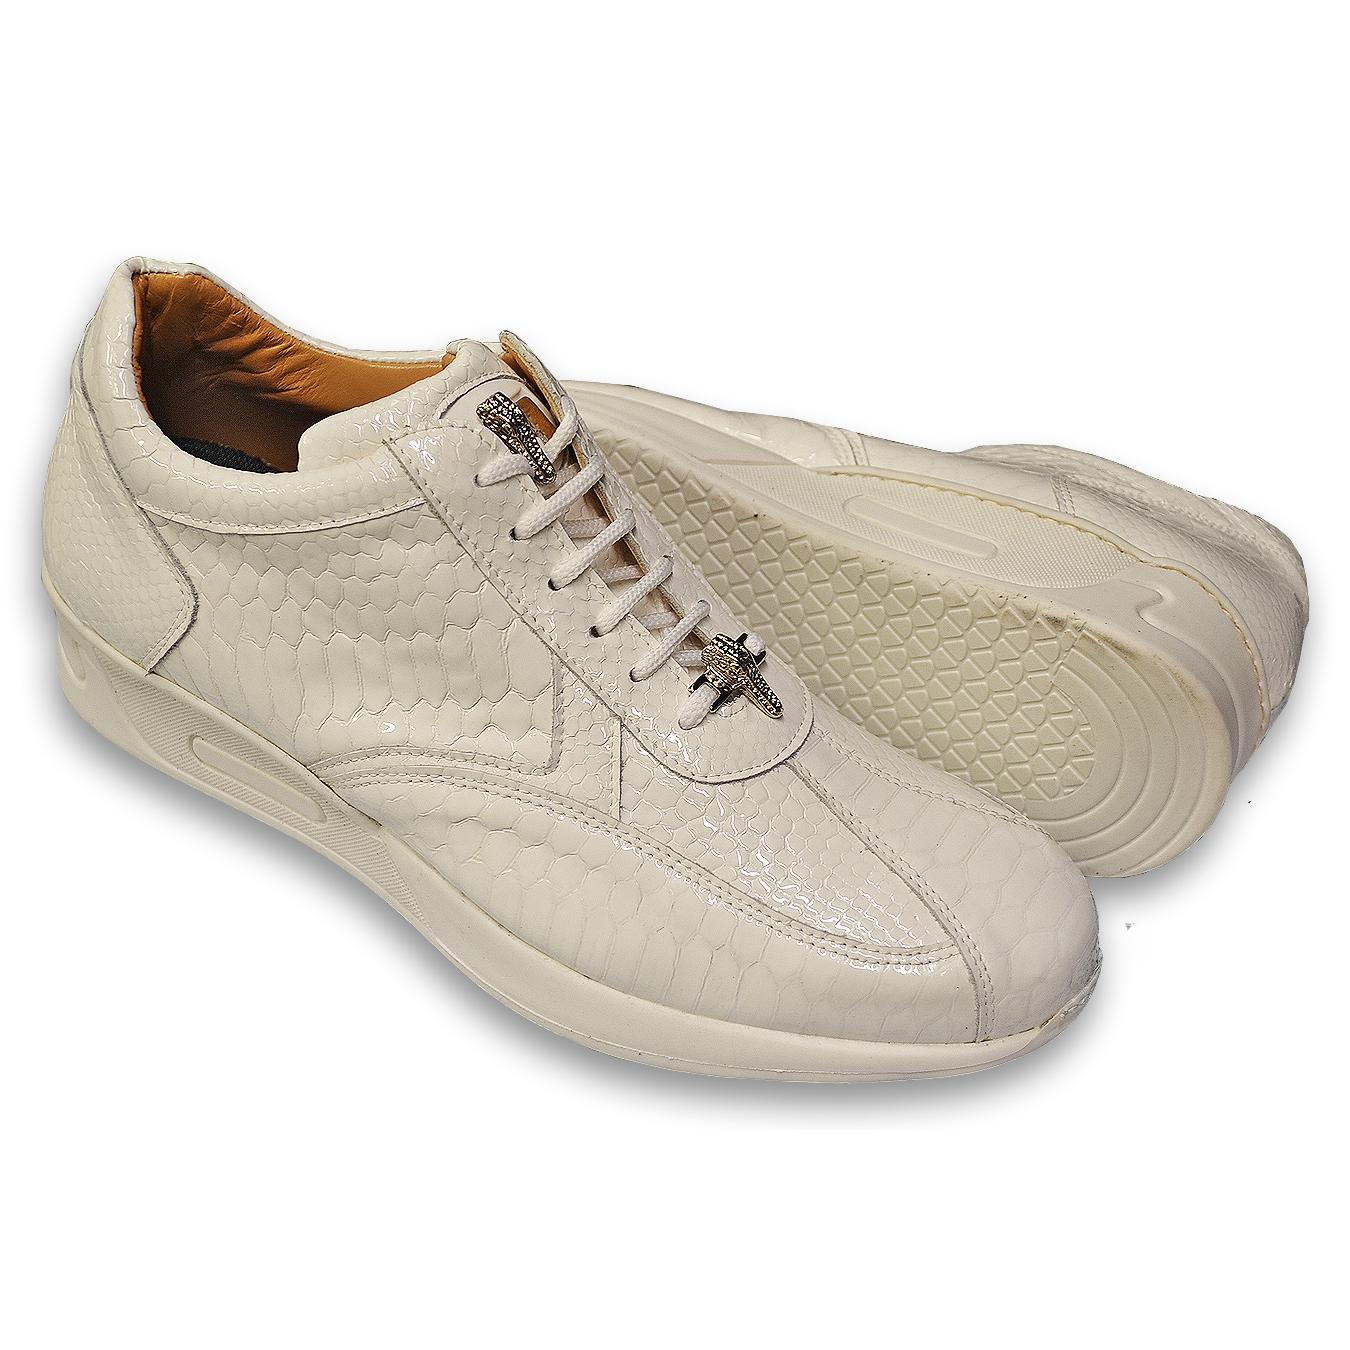 Mauri Aquarium M788 White Glazed Python Design Malabo Leather Sneakers ...